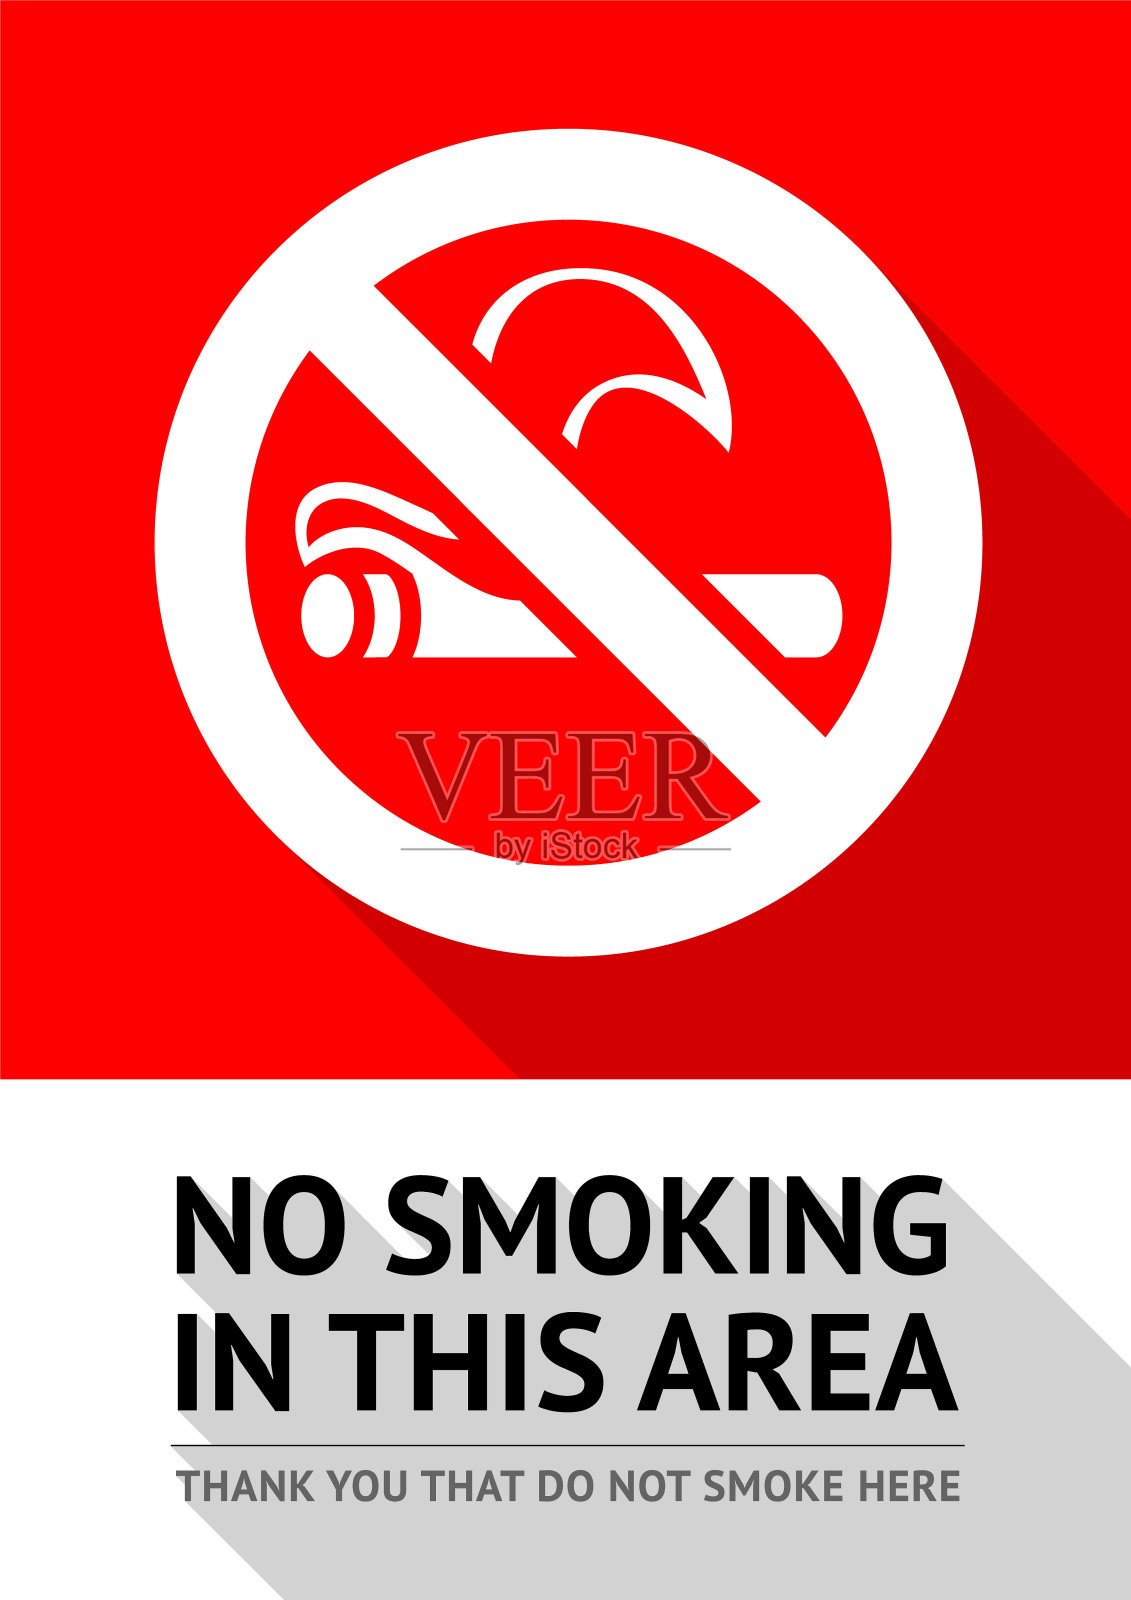 禁止吸烟区域插画图片素材